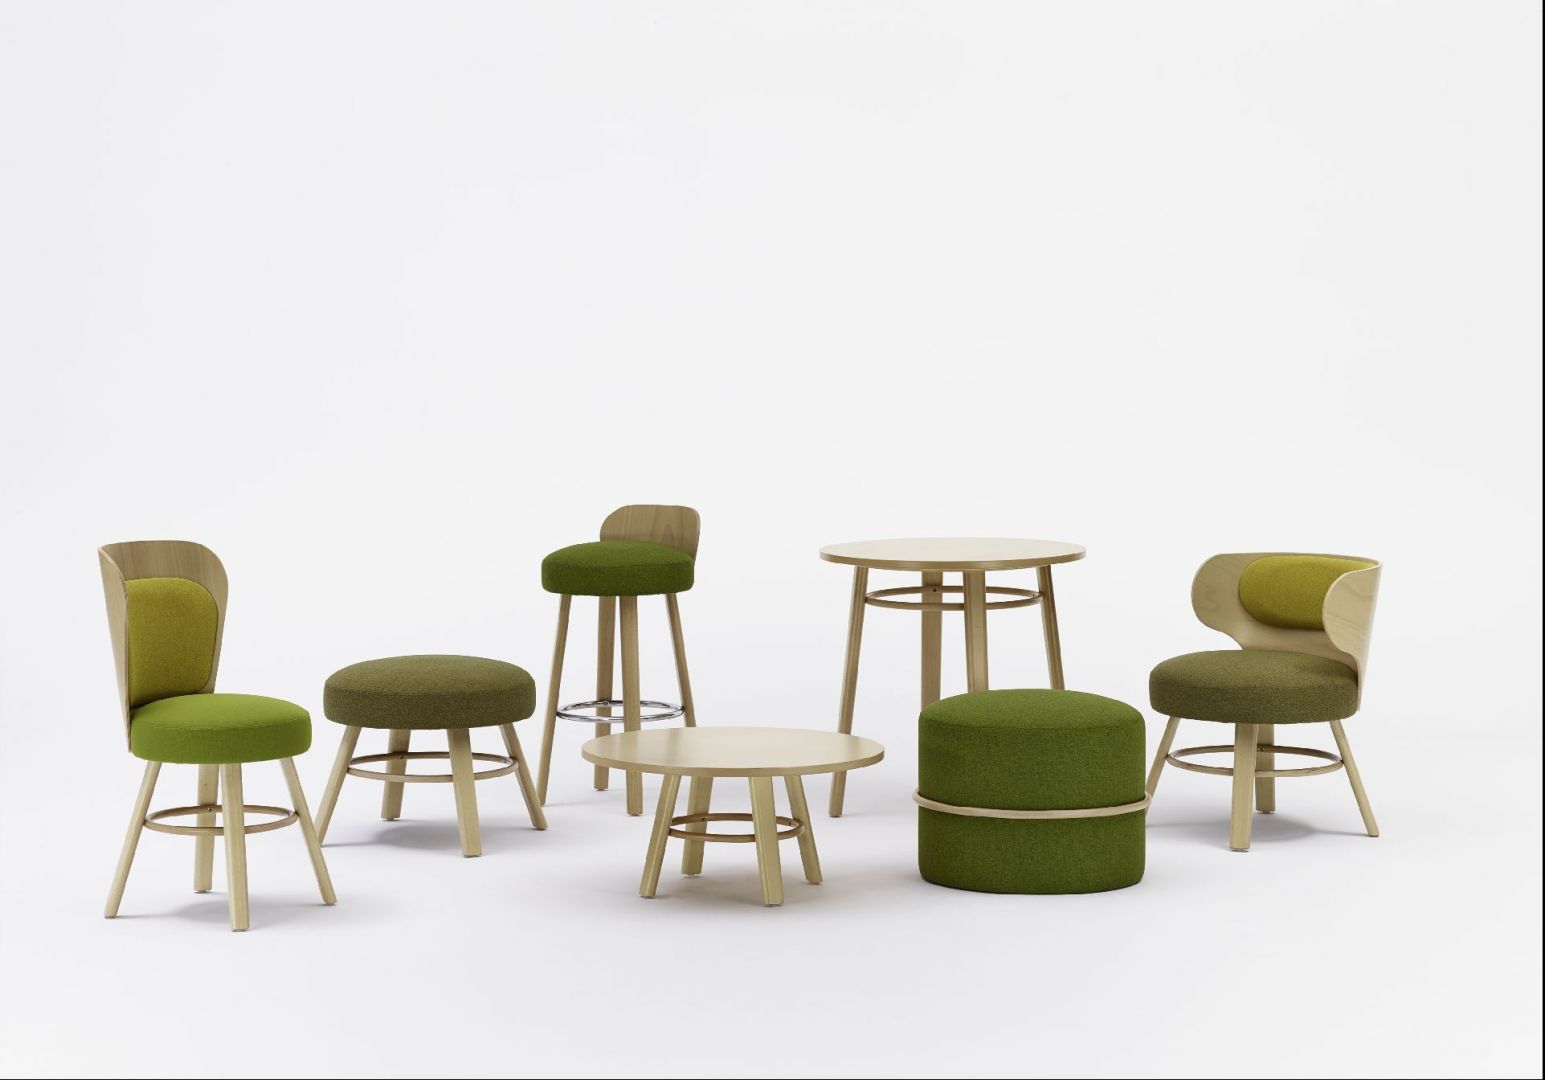 Stoliki, tapicerowane stołki oraz krzesła zaprojektowane przez Tomka Rygalika. Fot. Archiwum